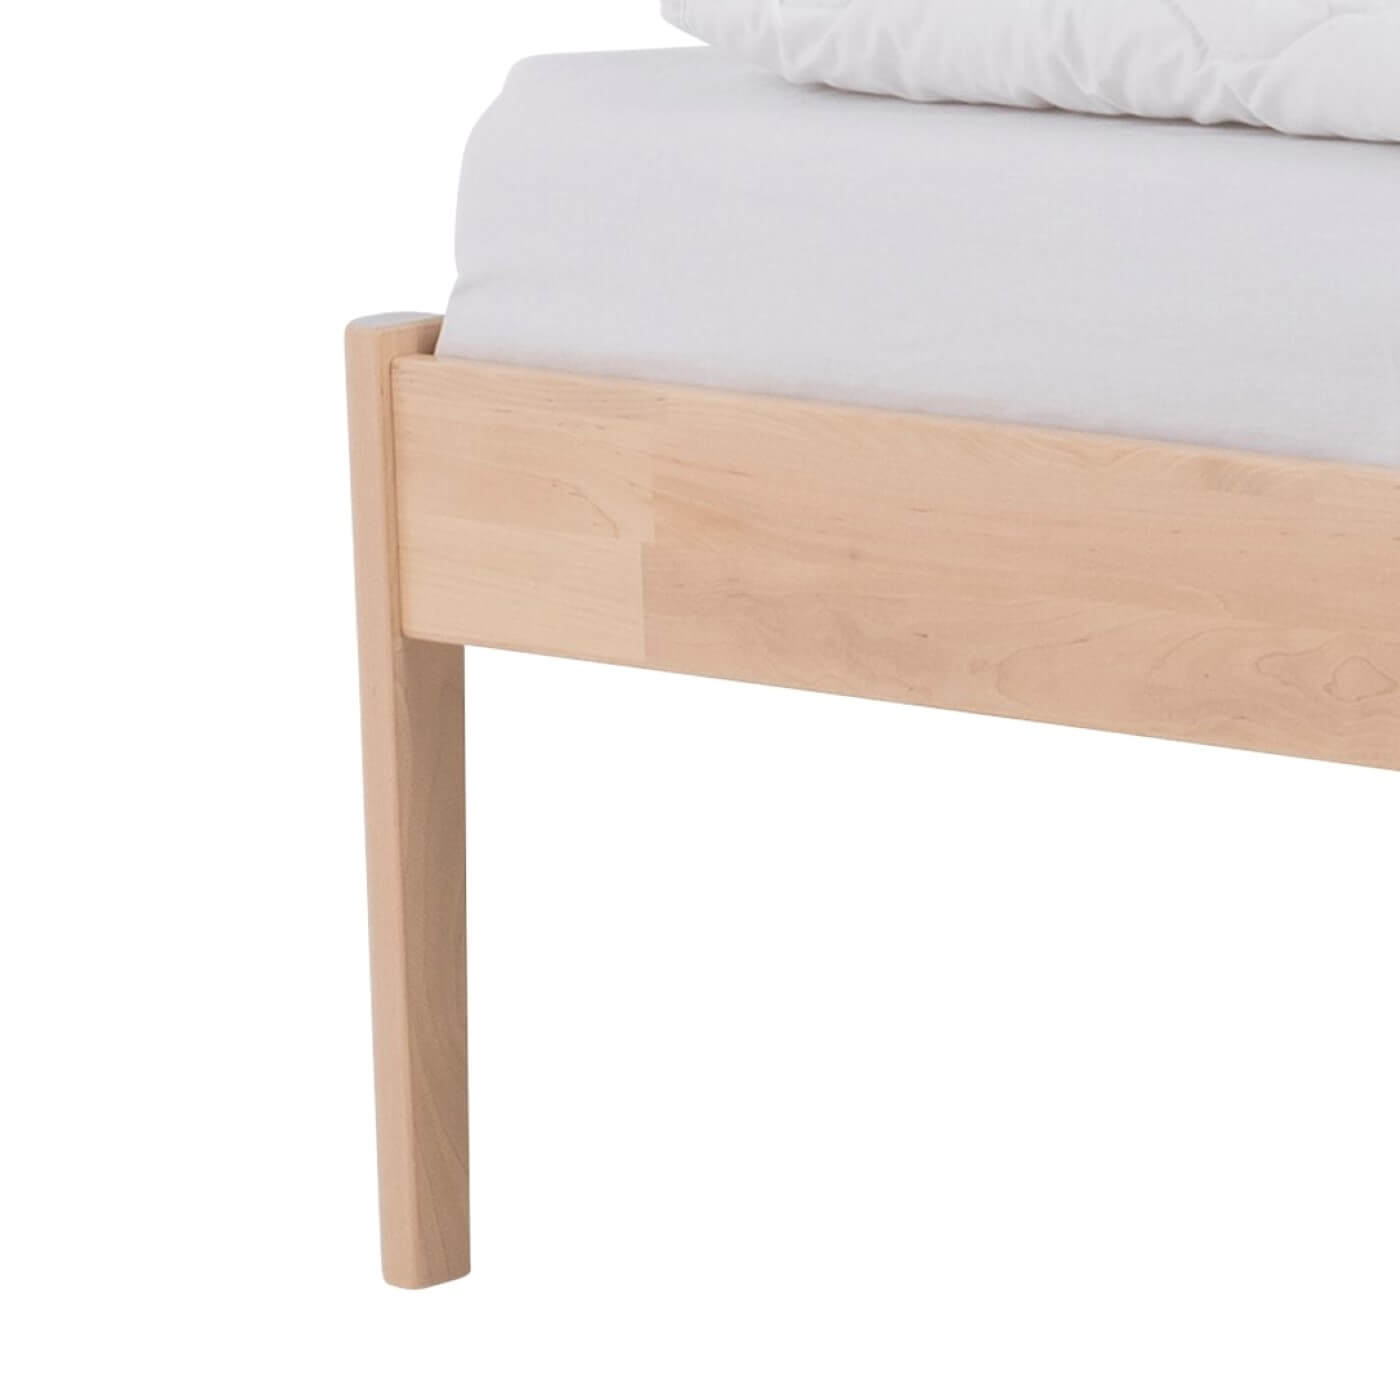 Łóżko drewniane bez zagłówka AVANTI. Wysoka prosta noga jednoosobowego łózka z litego drewna brzozy skandynawskiej w kolorze naturalnym. Nowoczesny minimalistyczny design